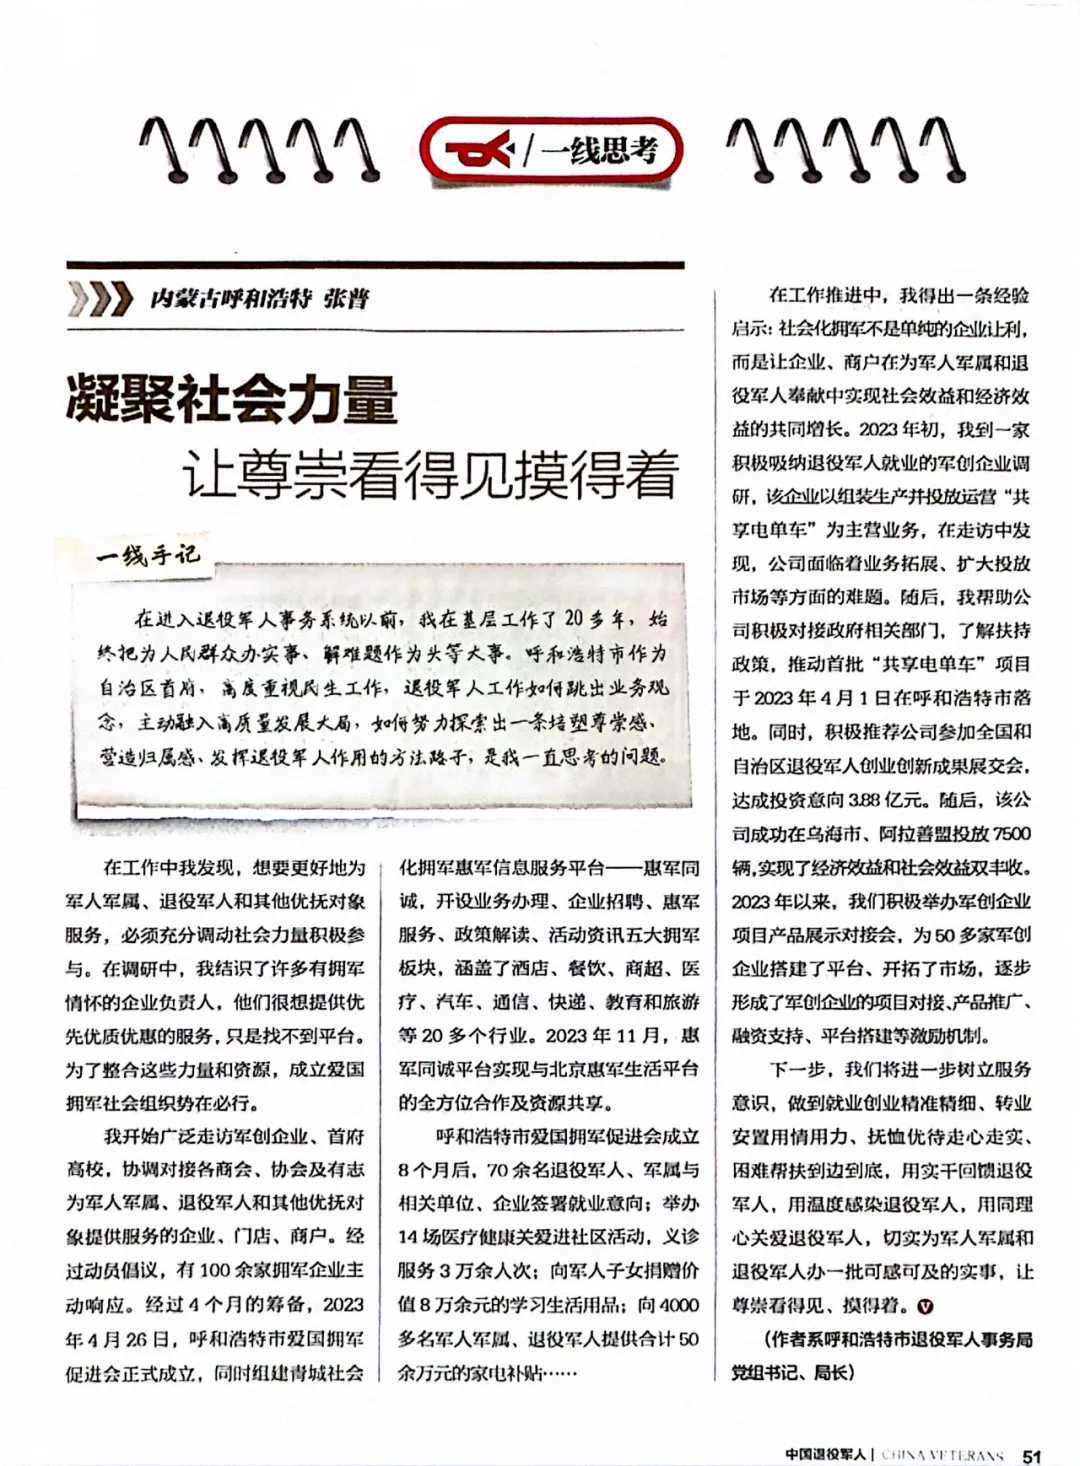 《中国退役军人》杂志刊发市退役军人事务局党组书记、局长张普署名文章《凝聚社会力量 让尊崇看得见摸得着》